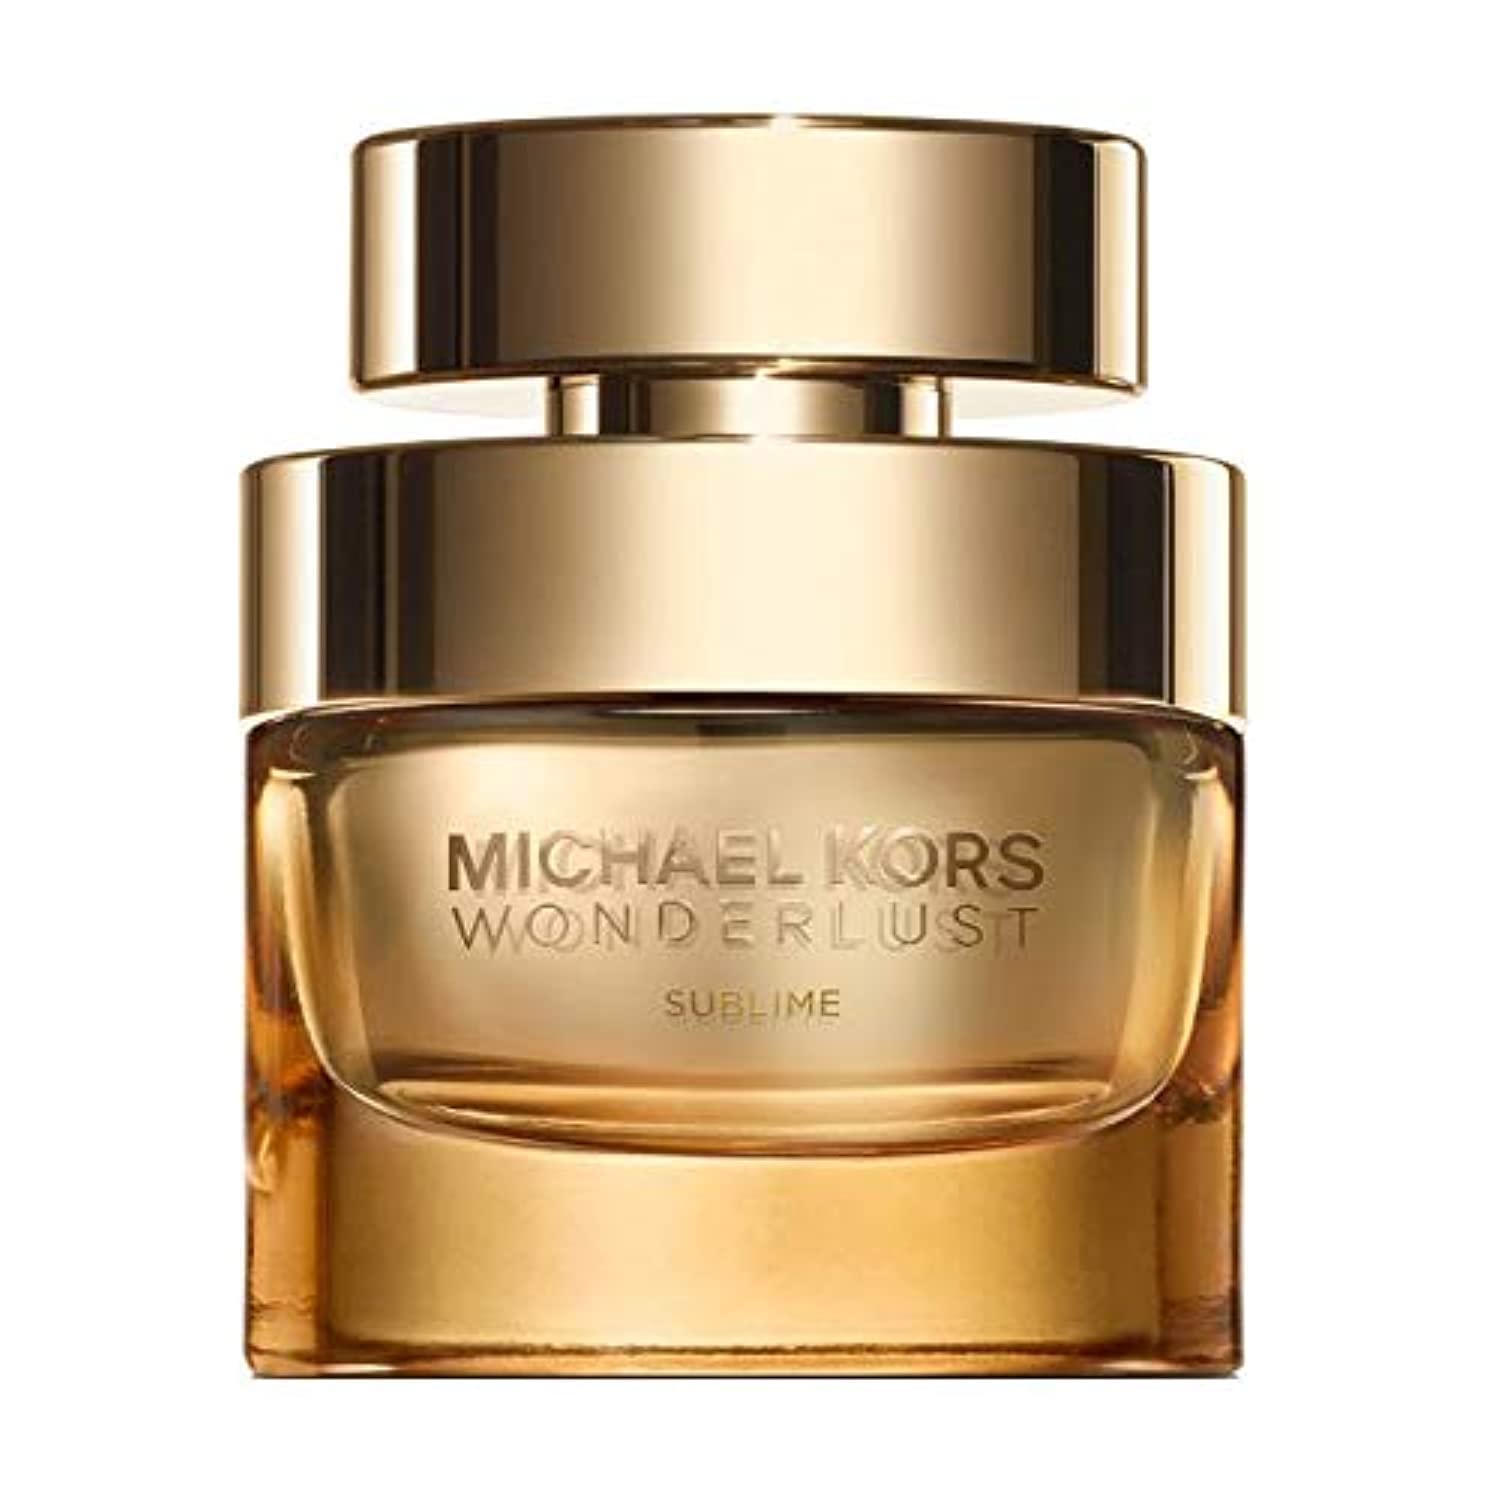 Michael Kors Wonderlust Sublime Ladies Eau de Parfum 1.7 oz (50 ml)